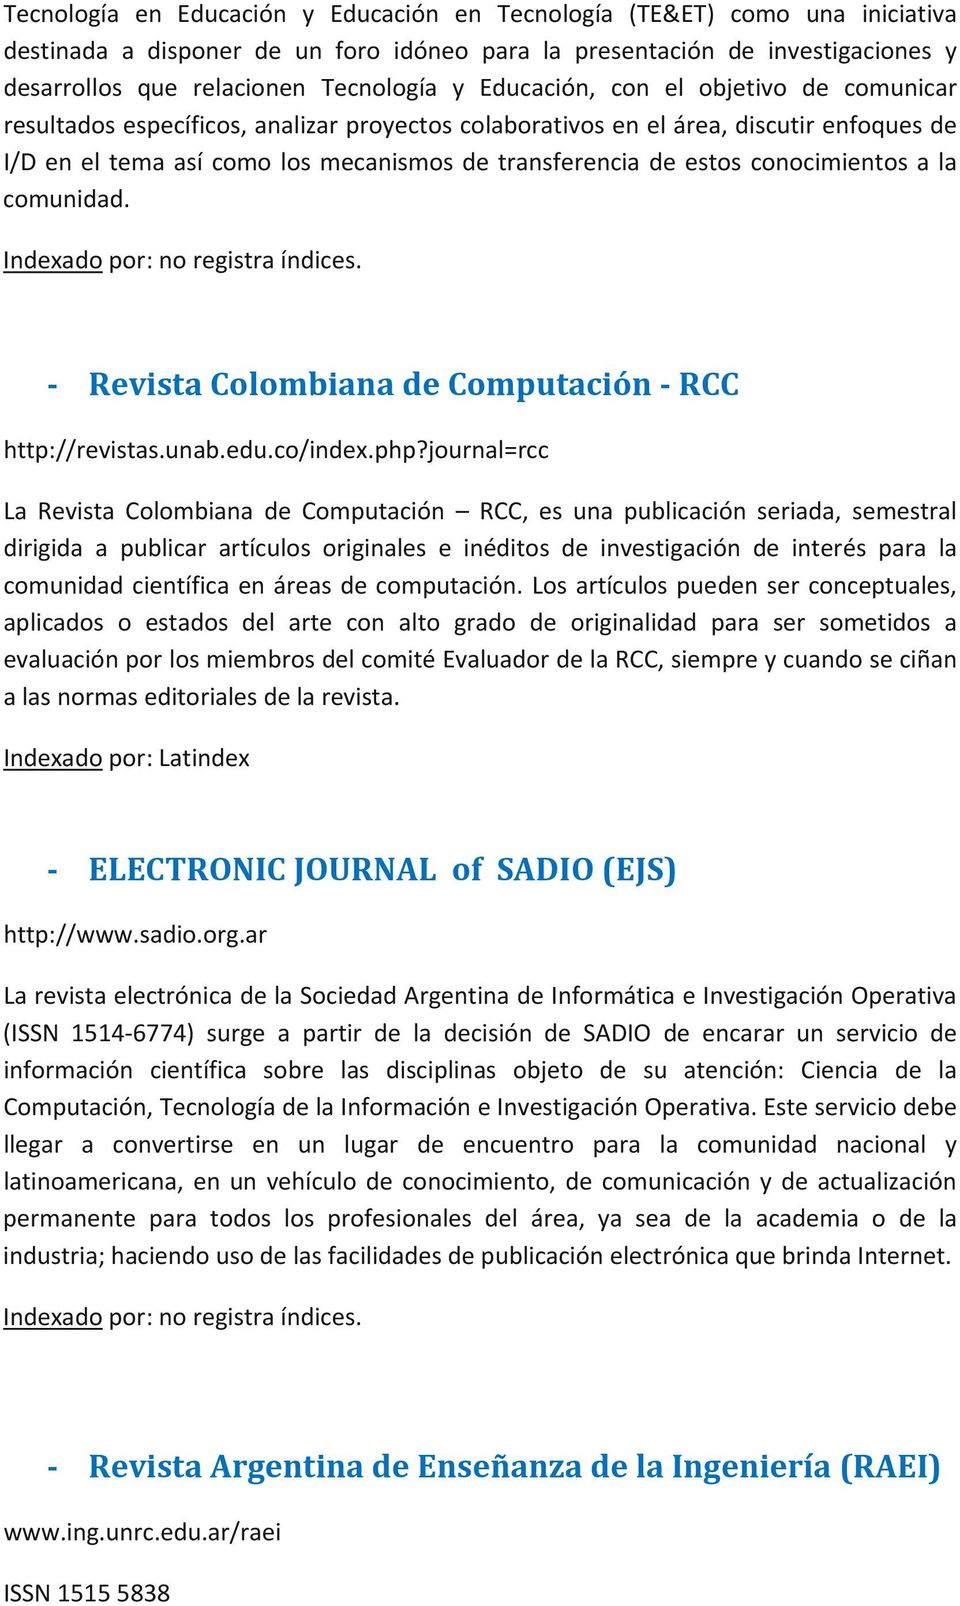 conocimientos a la comunidad. Indexado por: no registra índices. Revista Colombiana de Computación RCC http://revistas.unab.edu.co/index.php?